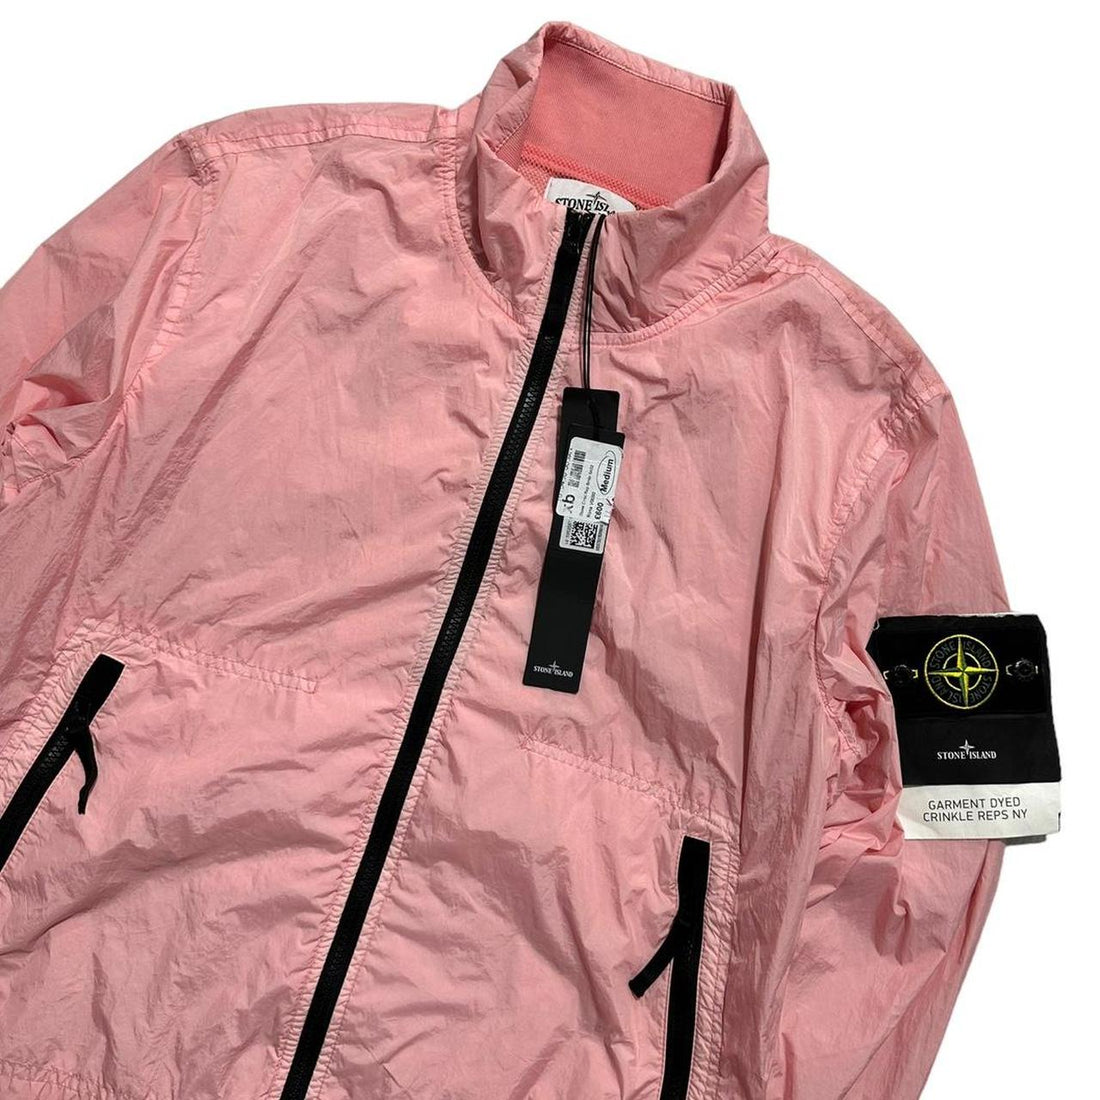 Stone Island Garment Dyed Crinkle Reps NY Jacket